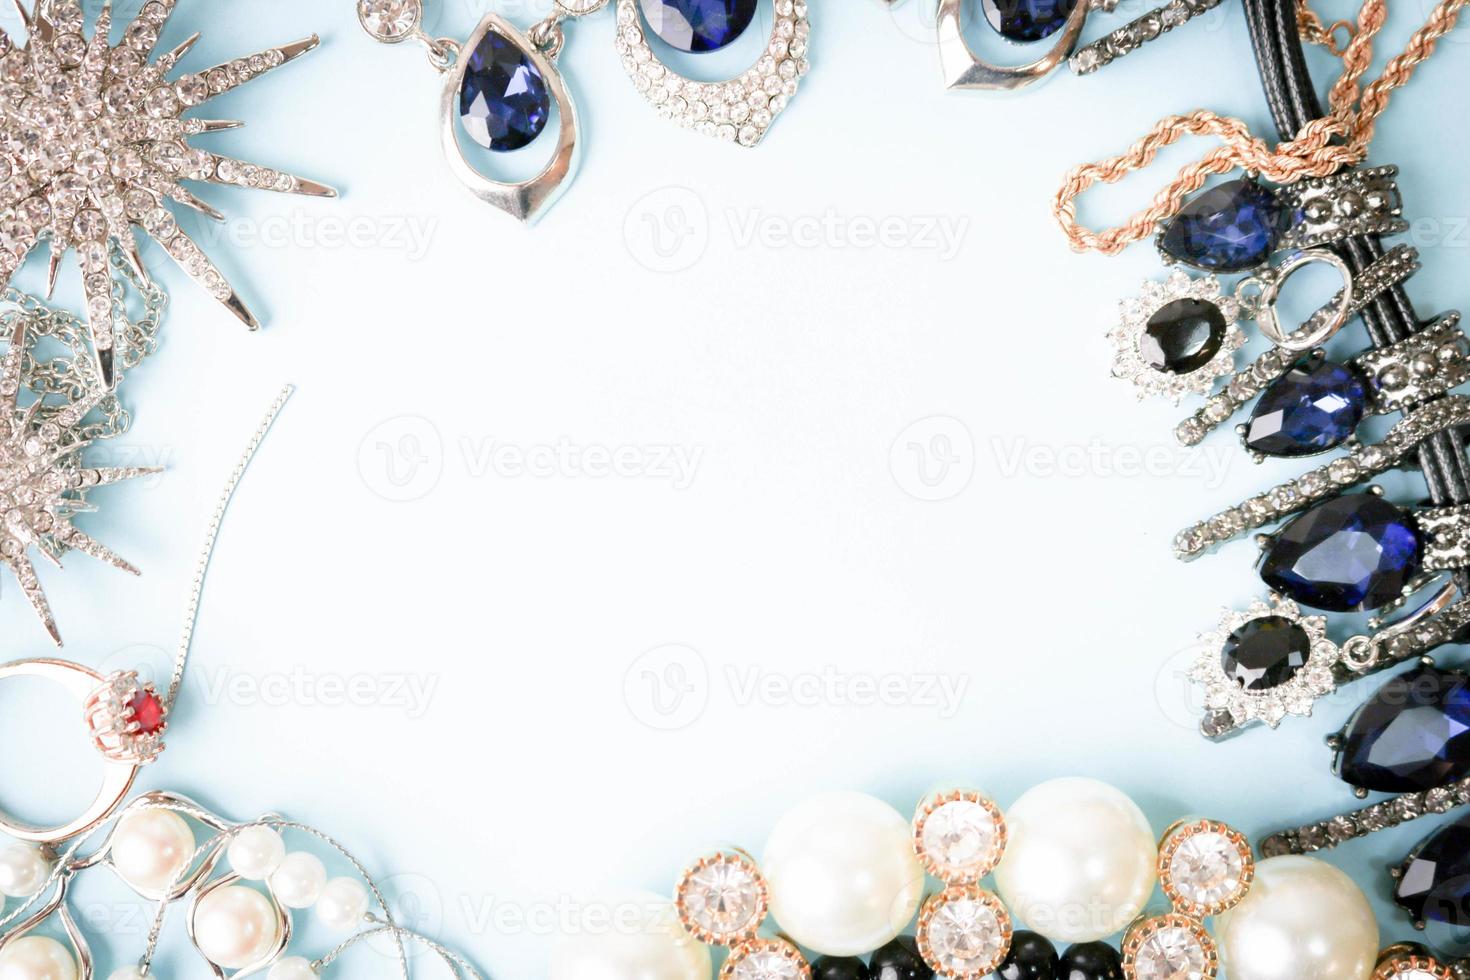 belas jóias brilhantes preciosas na moda conjunto de jóias glamourosas, colar, brincos, anéis, correntes, broches com pérolas e diamantes em um fundo azul. configuração plana, vista superior, local de cópia foto